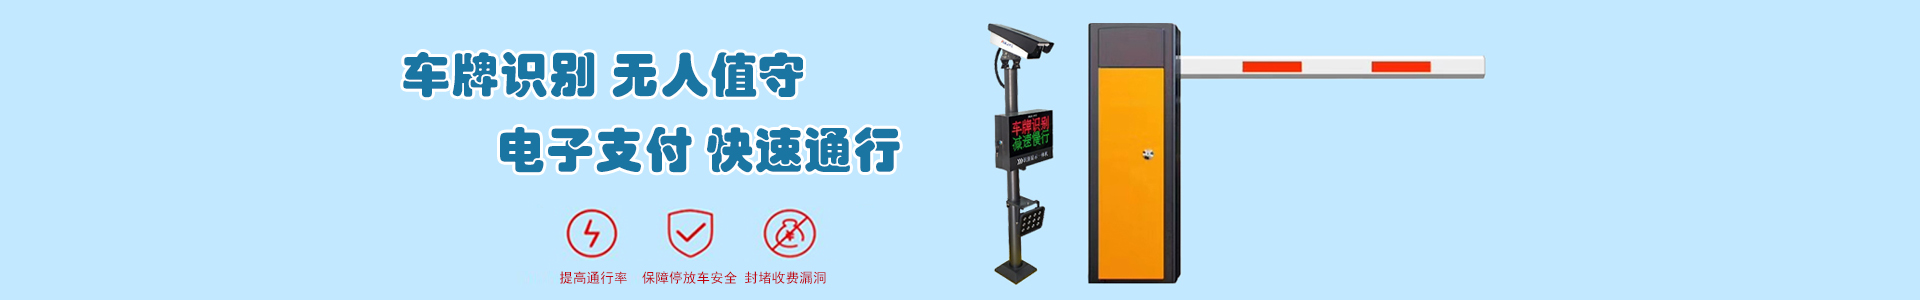 产品中心-上海帆蓝智能科技有限公司-车辆车牌识别|监控摄像头|道闸|小区门禁|人脸识别|伸缩门|